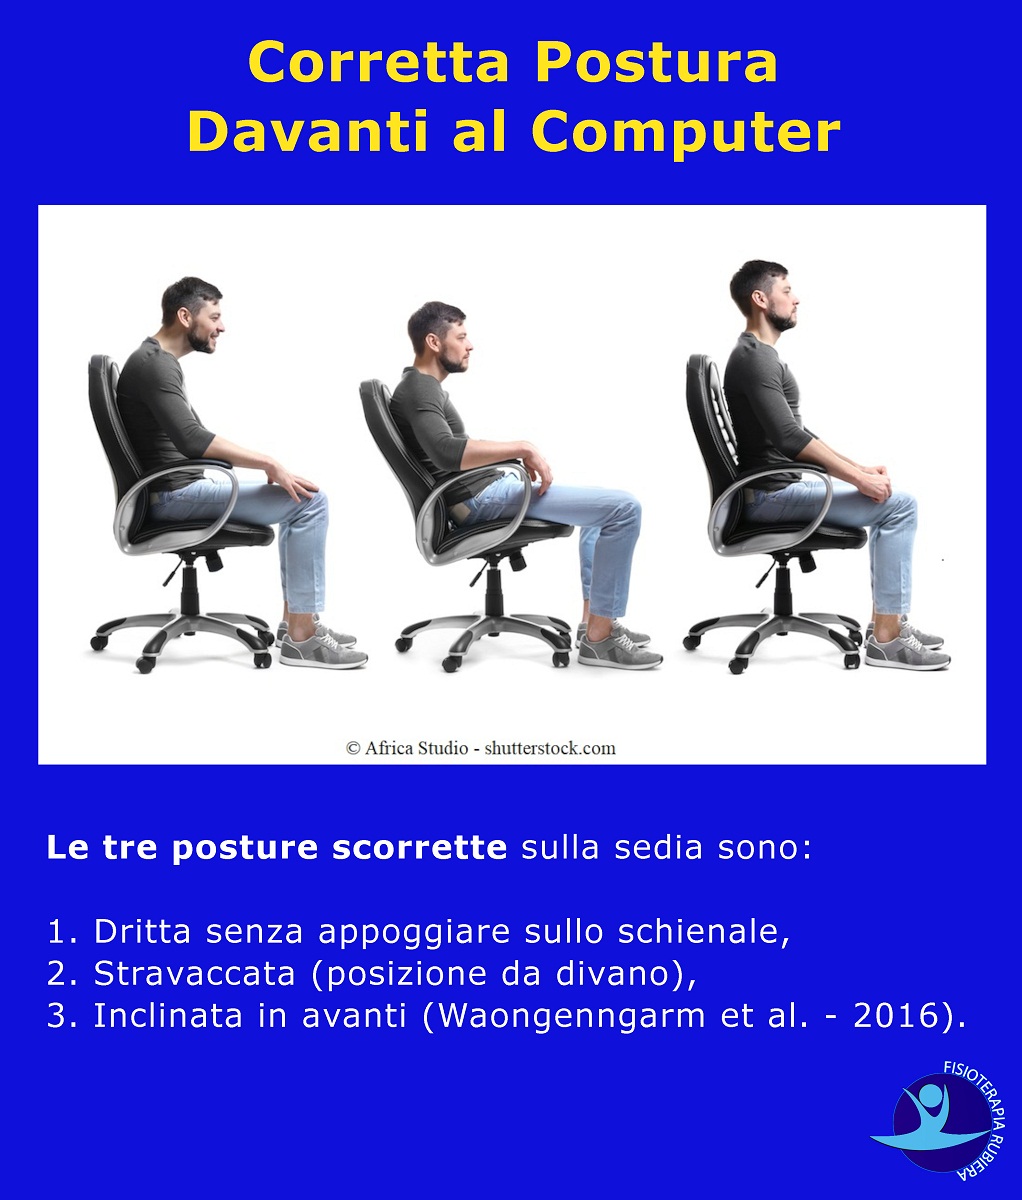 Corretta-Postura-Davanti-al-Computer